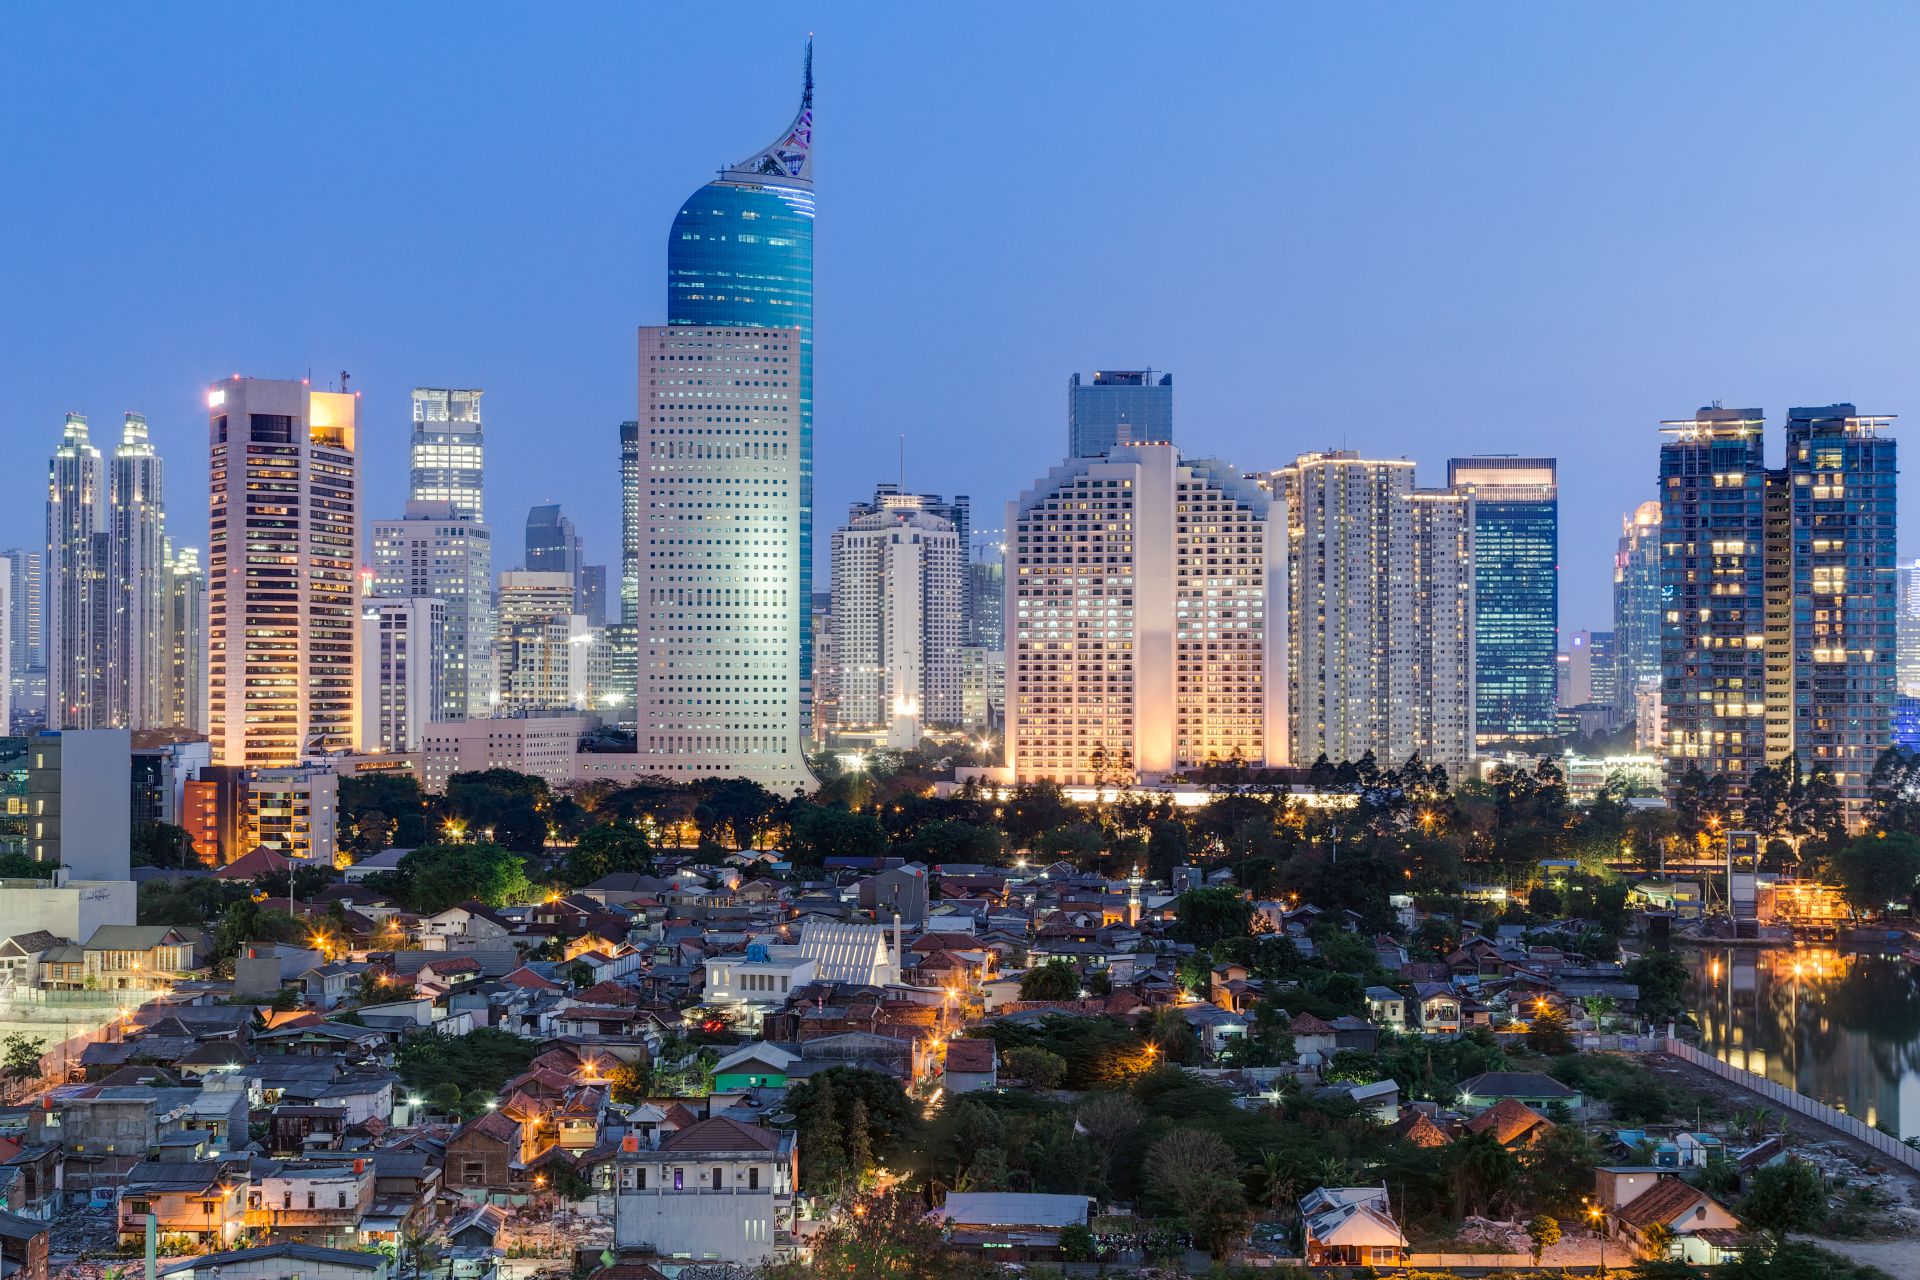 Le centre-ville de Jakarta avec ses grands immeubles